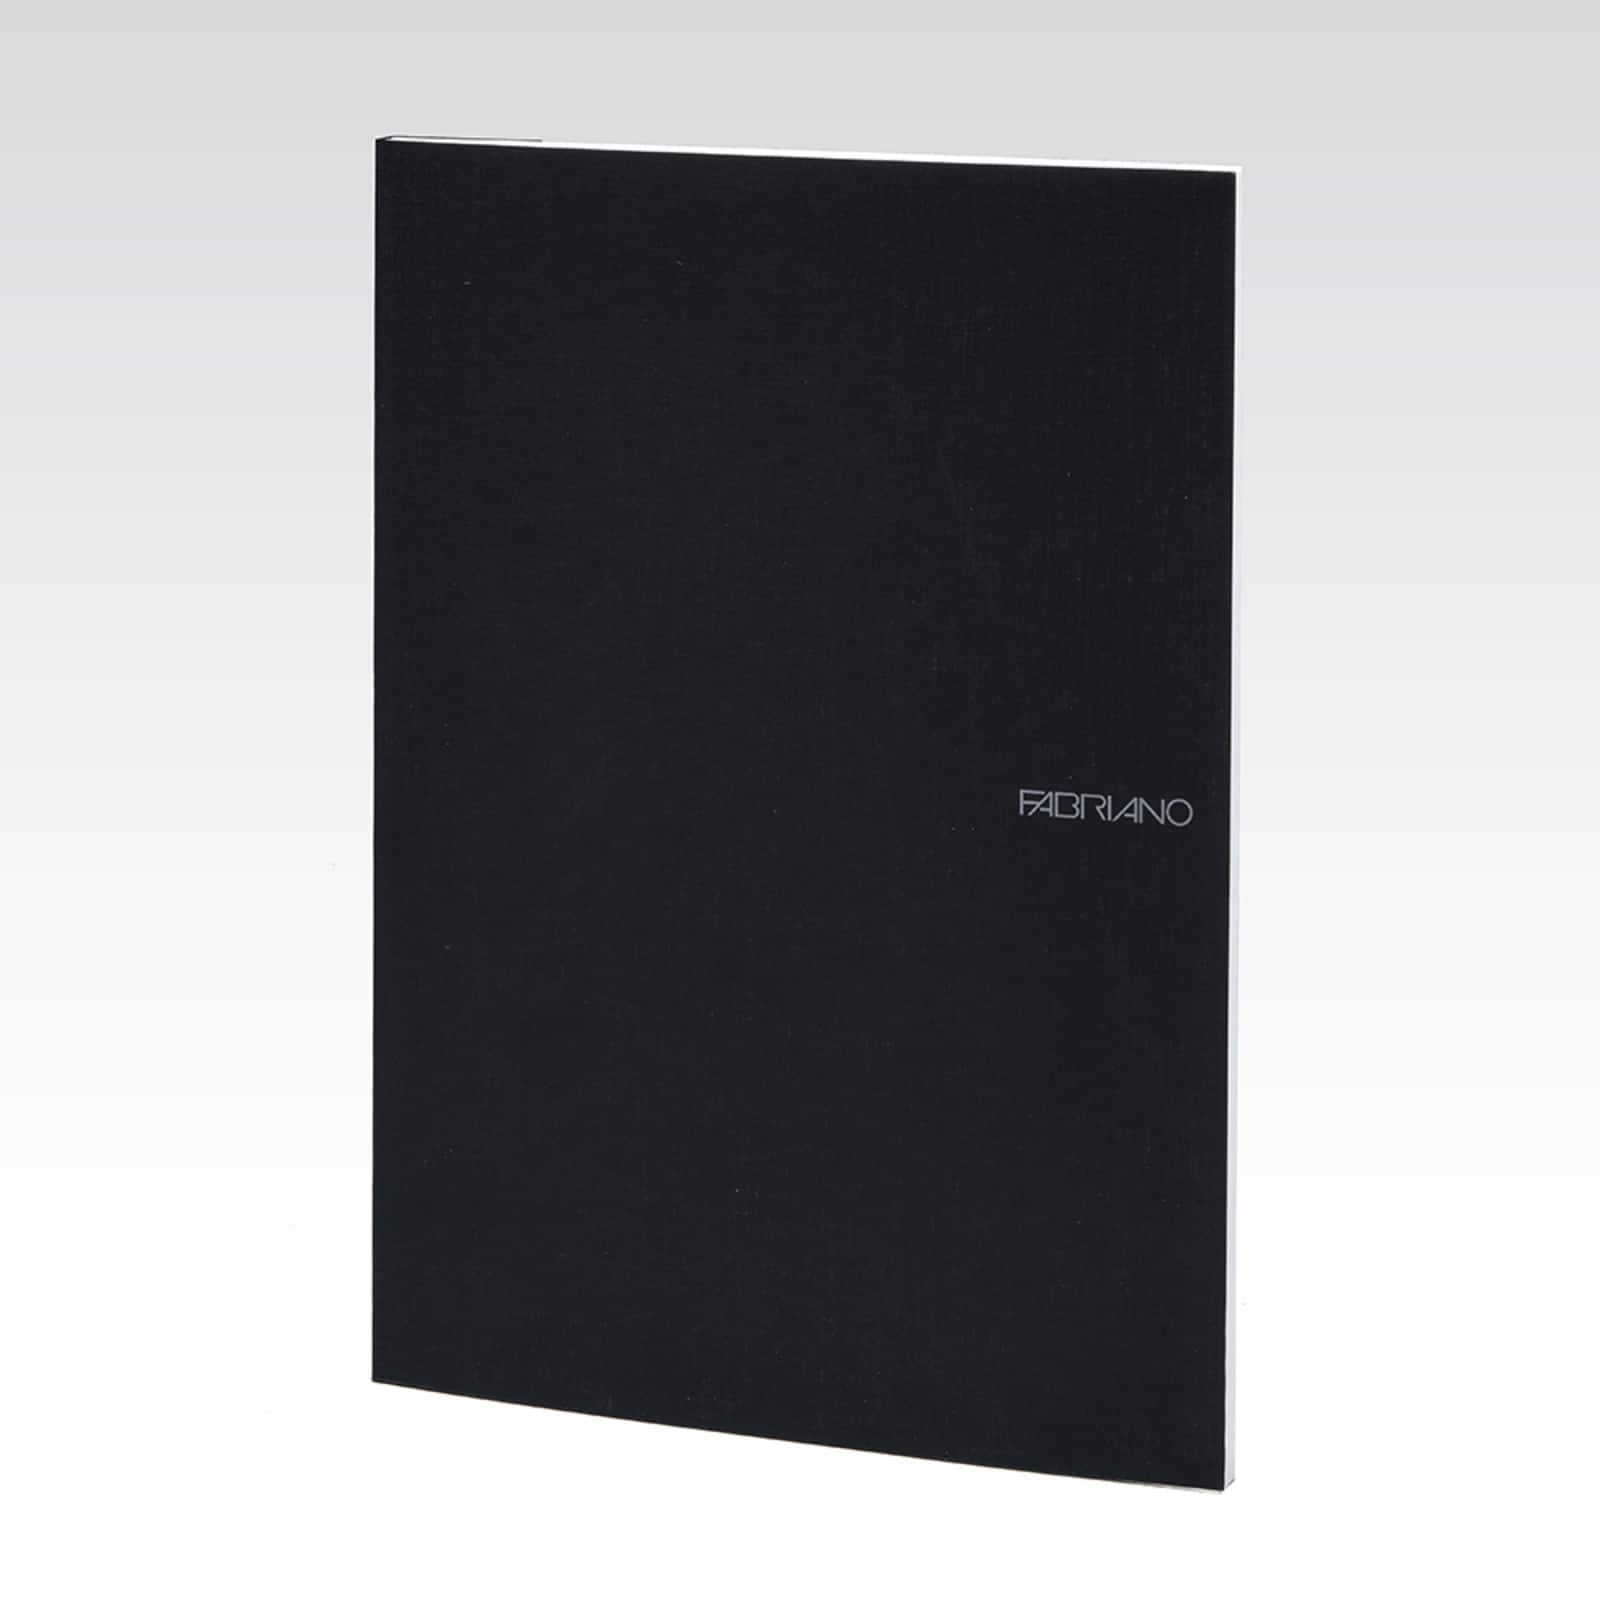 Fabriano&#xAE; EcoQua Black Dot Grid Note Pad, A4